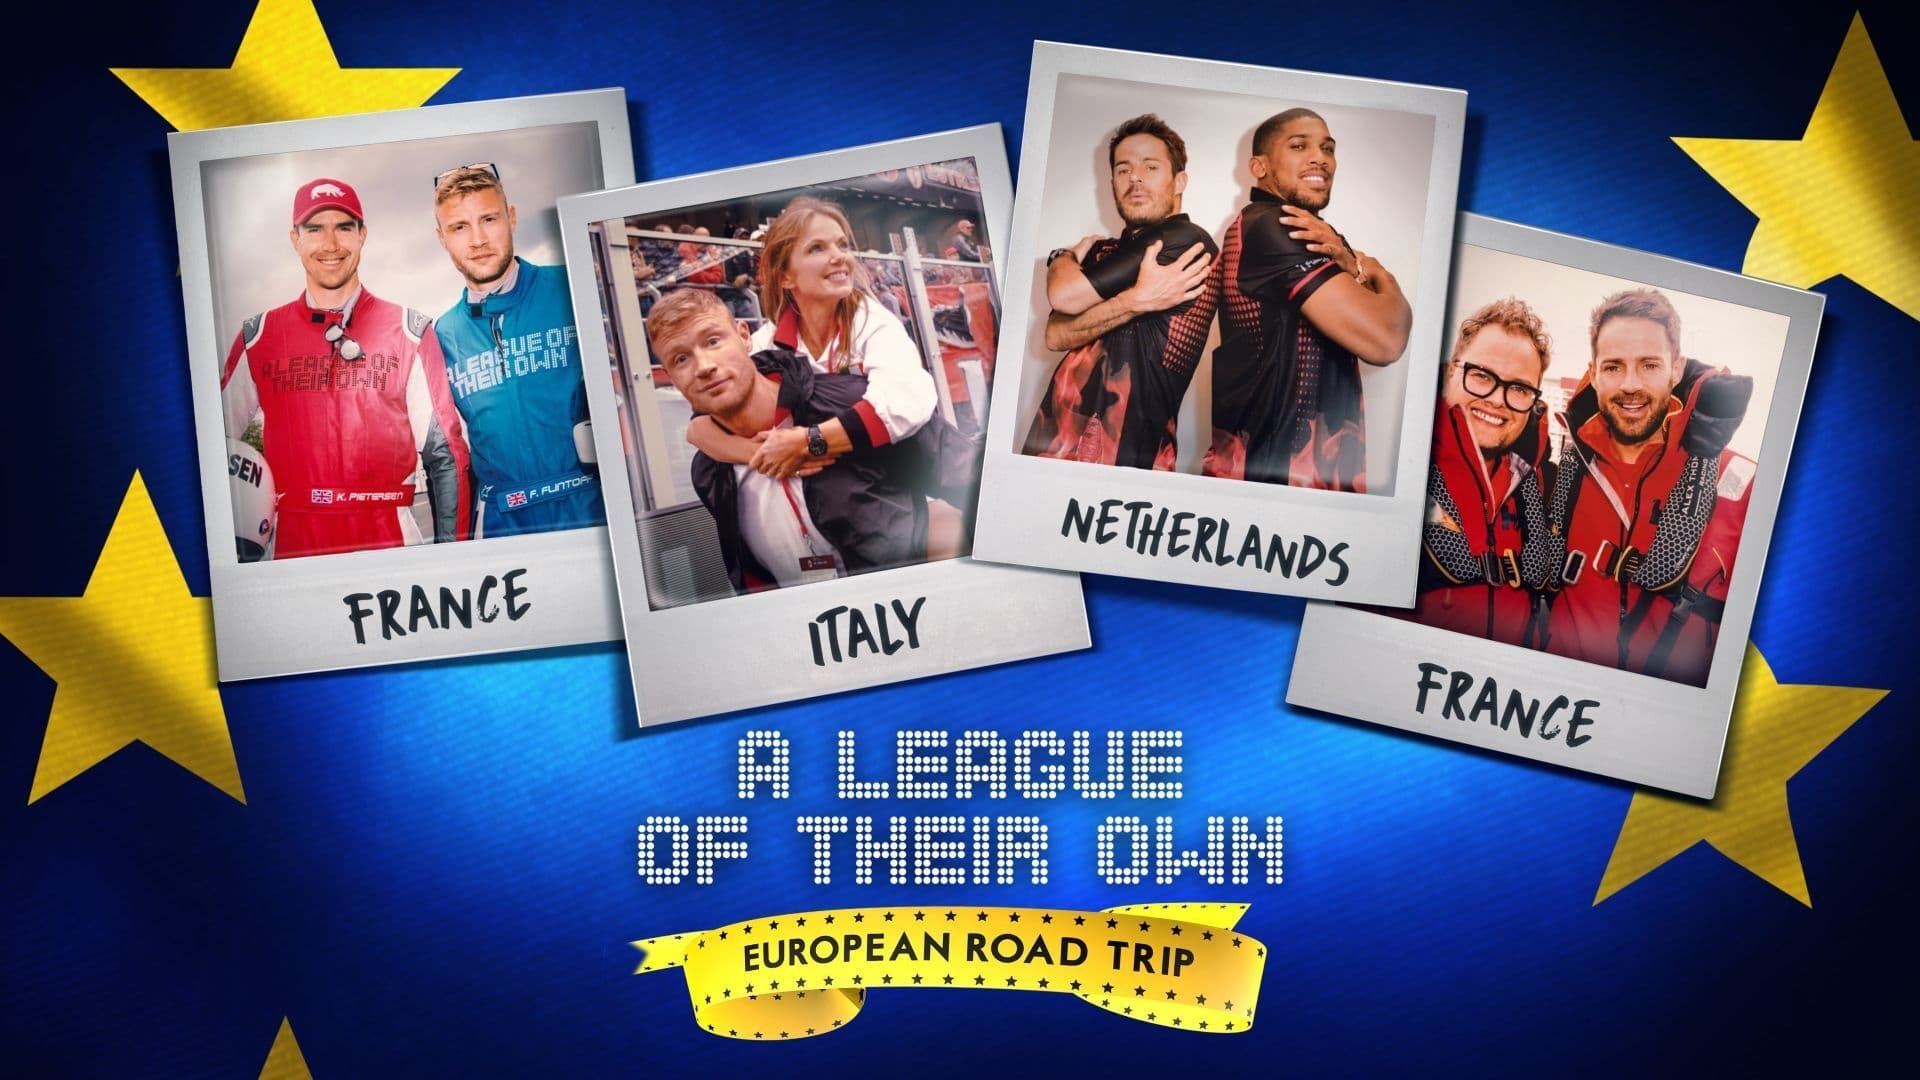 A League of Their Own: European Road Trip background